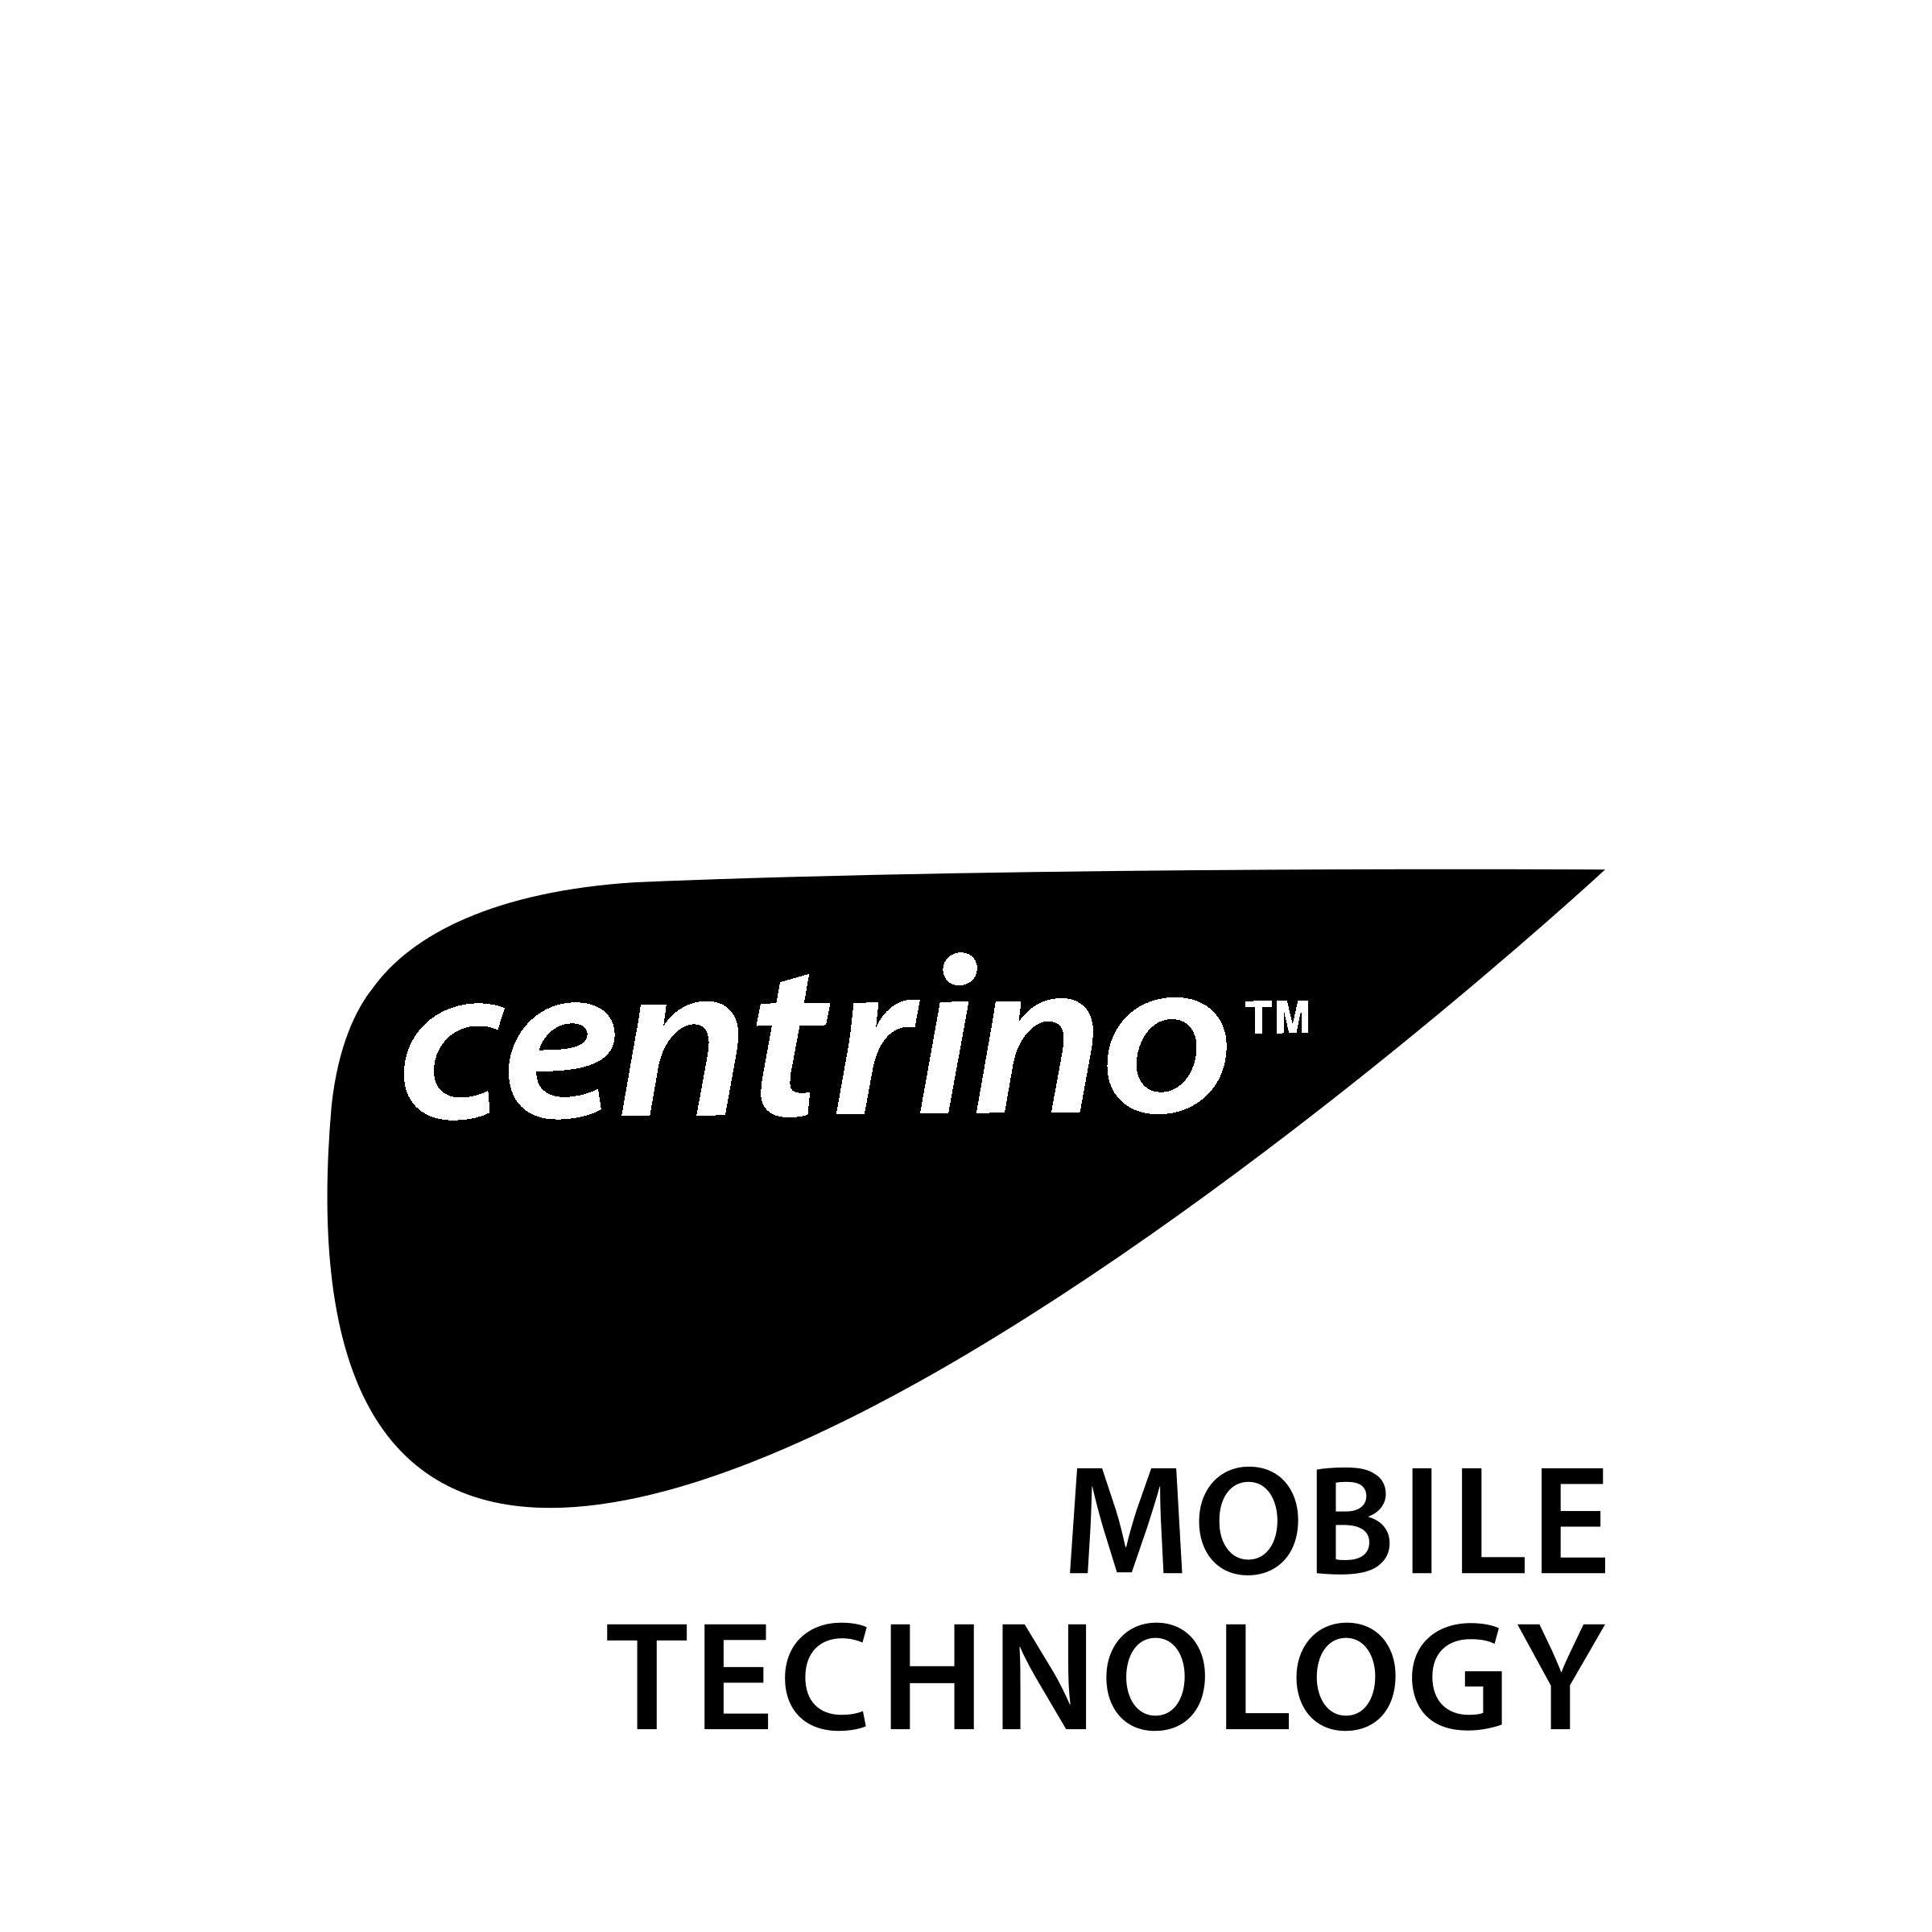 Centrino Logo - Centrino Logo PNG Transparent & SVG Vector - Freebie Supply